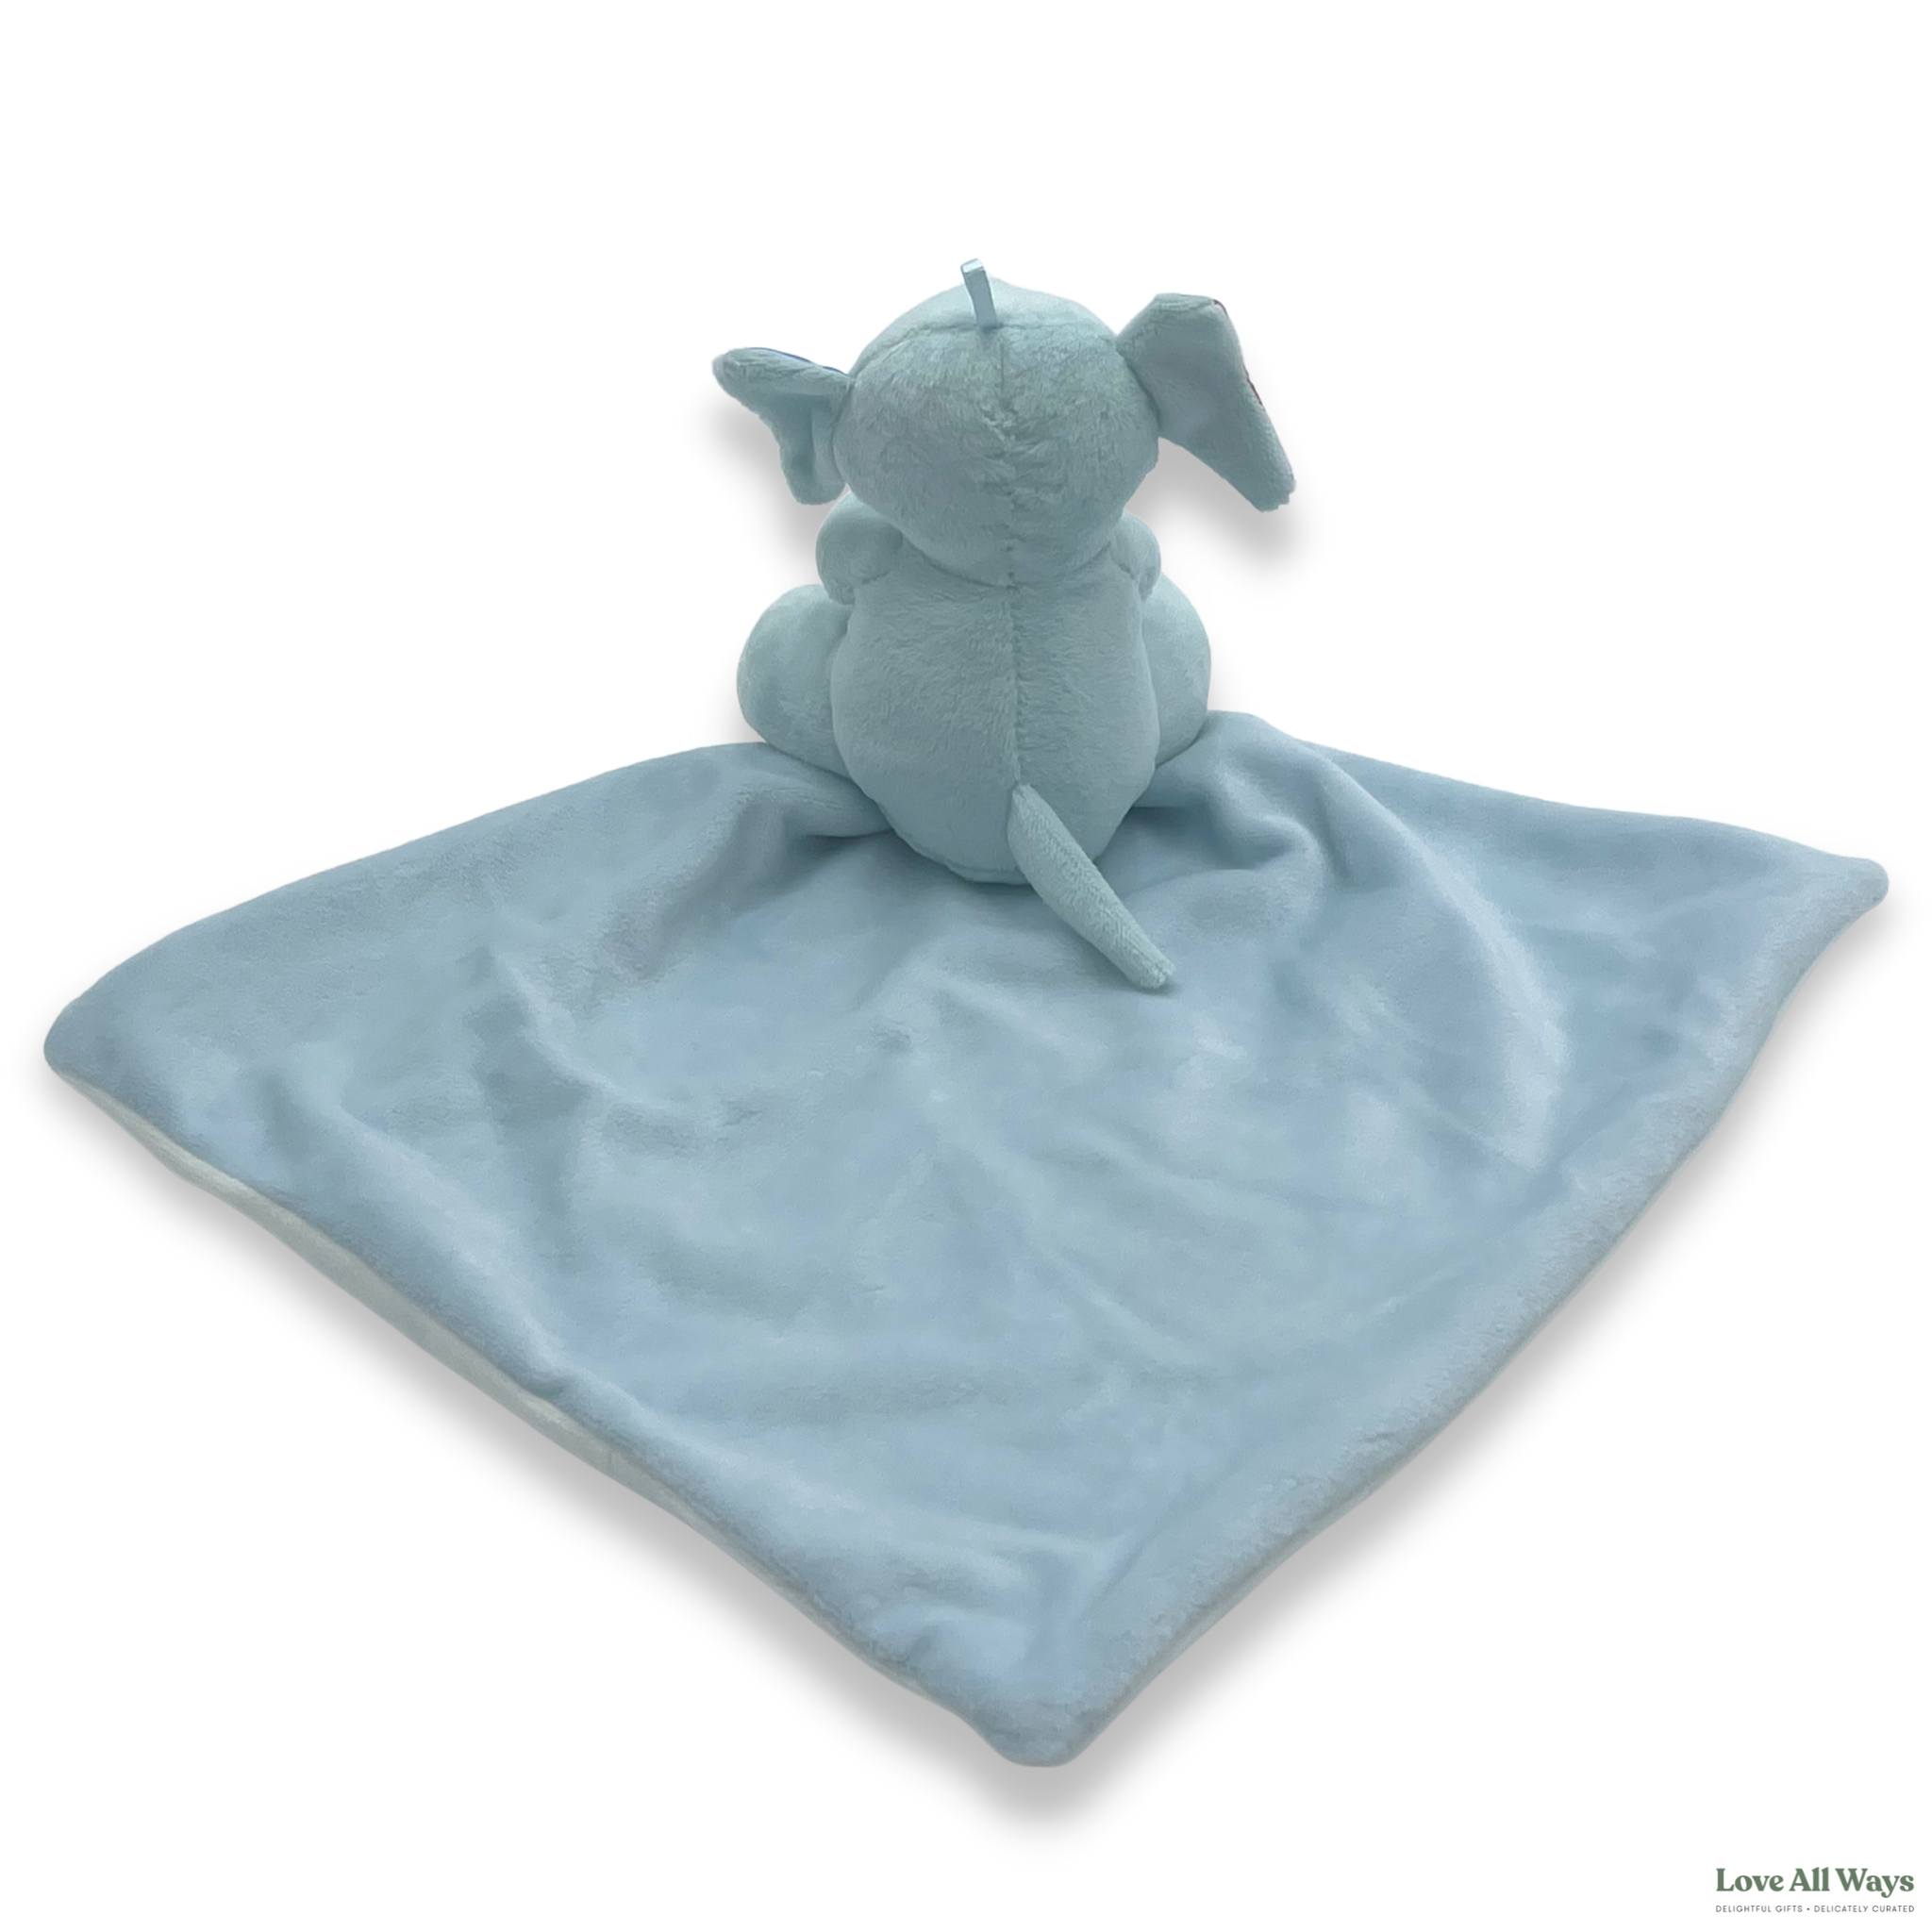 Soft Plush Security Blanket - Blue Elephant